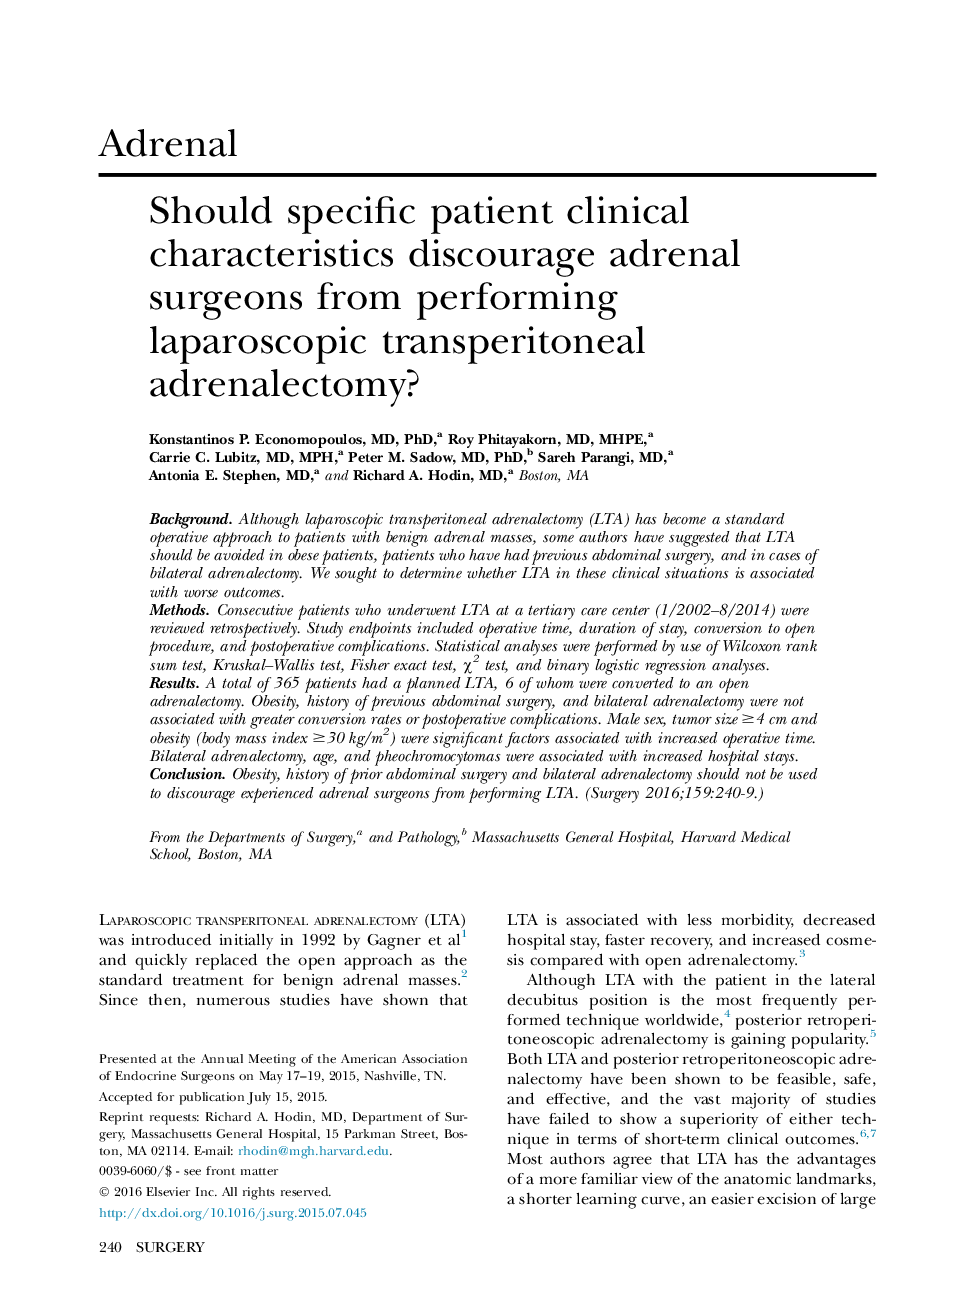 آیا علائم بالینی خاص بیمار از جراحان آدرنال از انجام آدنوپالکتومی ترانس پروپتونی لاپاروسکوپی جلوگیری می کند؟ 